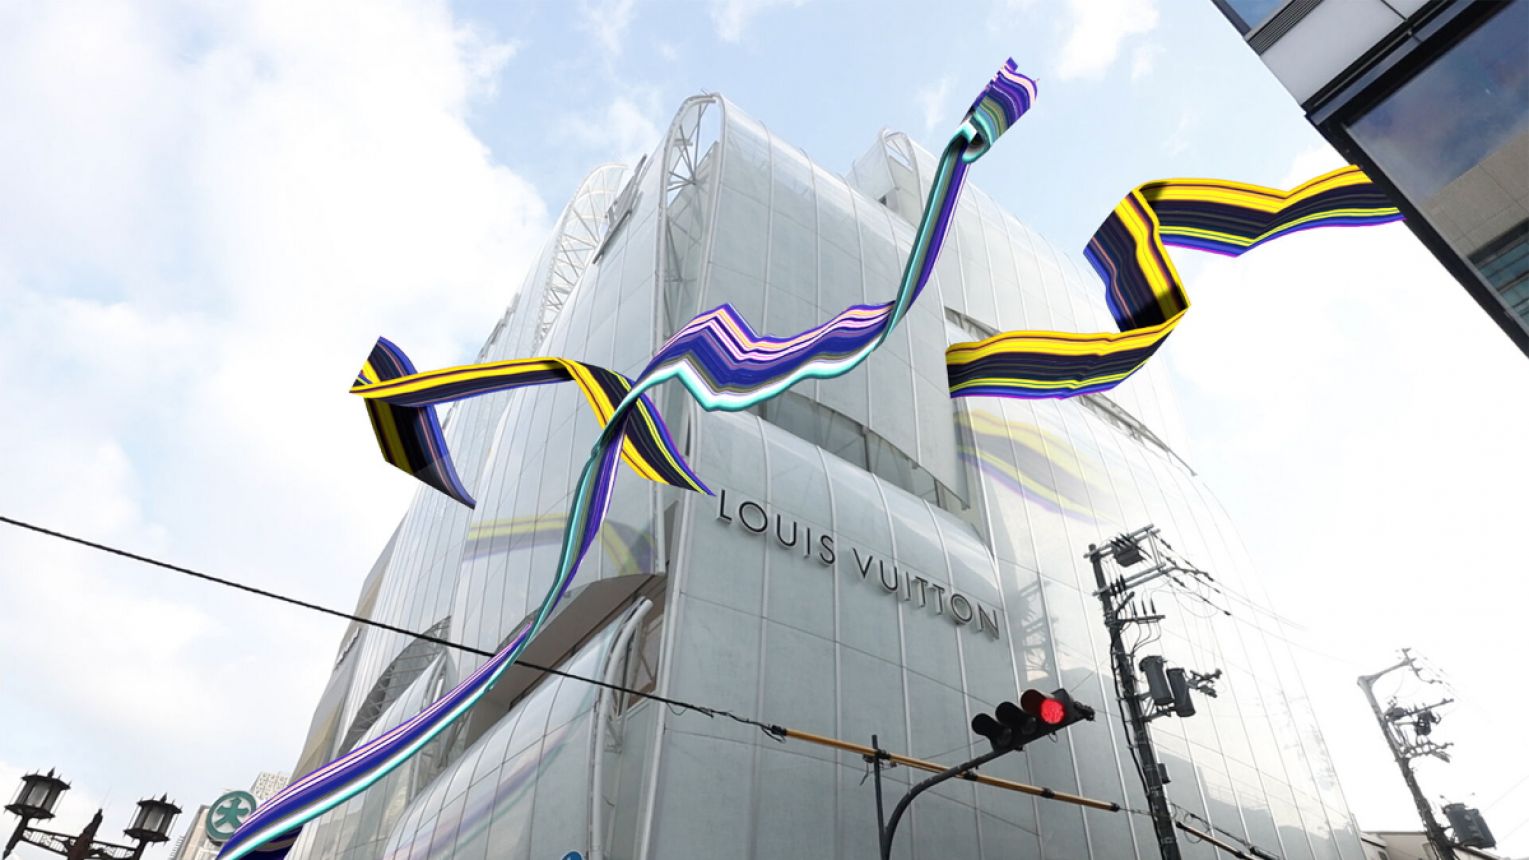 Louis Vuiton's Maison Osaka Midosuji - coming soon - Luxferity Magazine